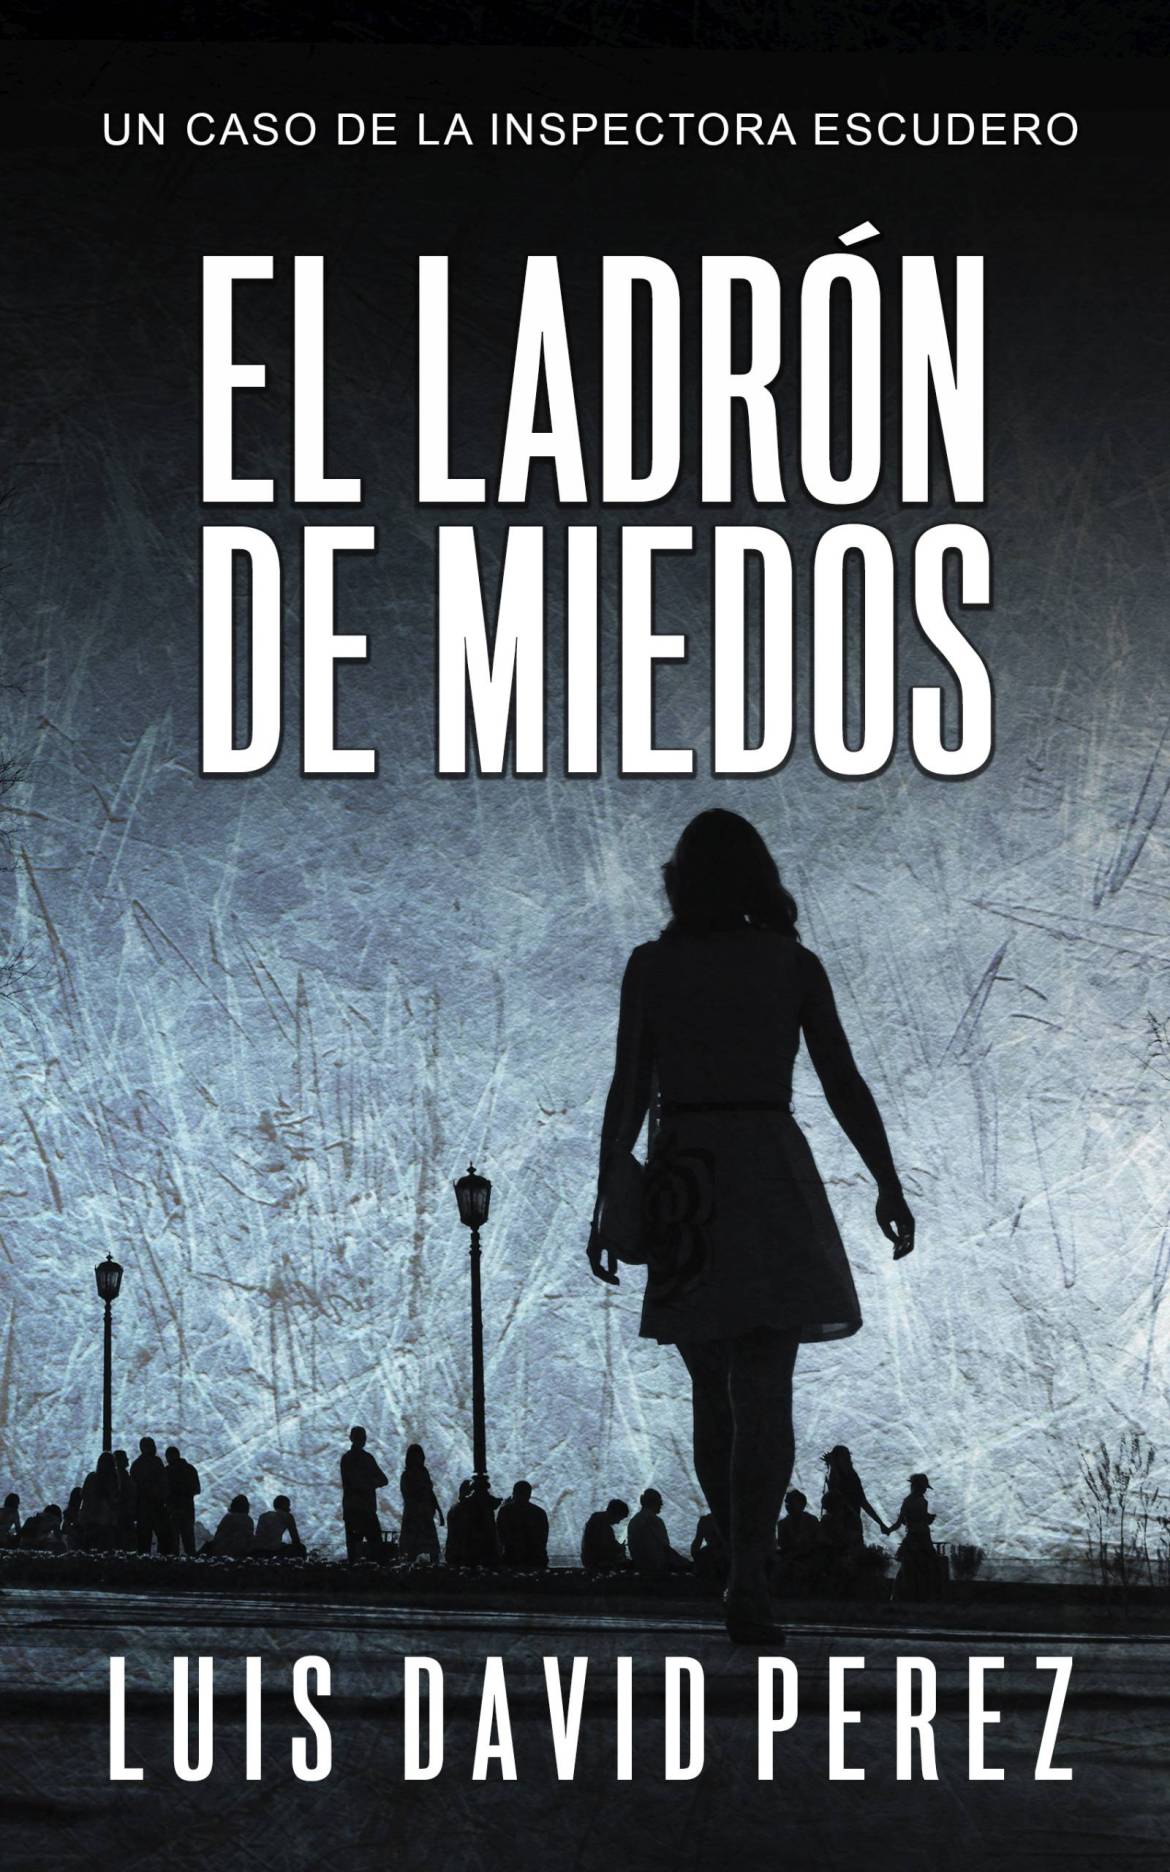 El-ladron-de-miedos_Cubierta-Kindle-scaled.jpg